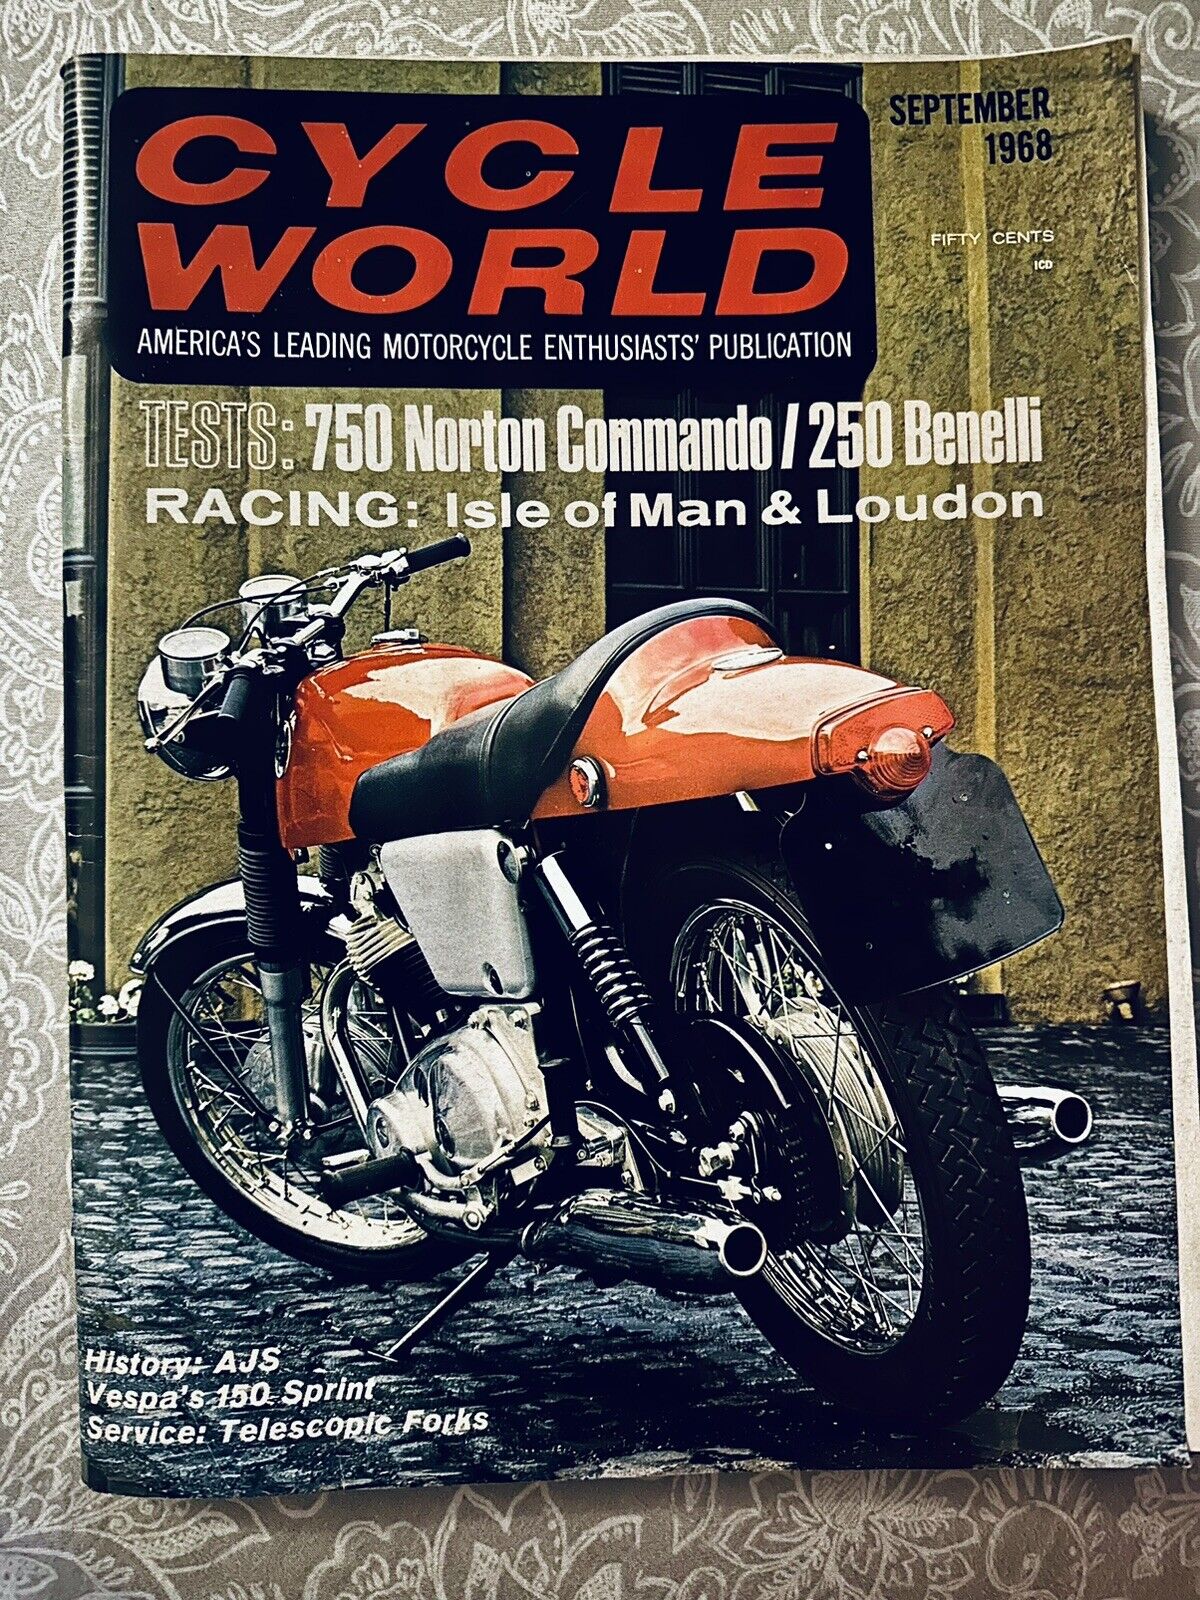 Cycle World Magazine  750 Norton Commando 250 Benelli Vespa B13614 9/68 vol 7 #9